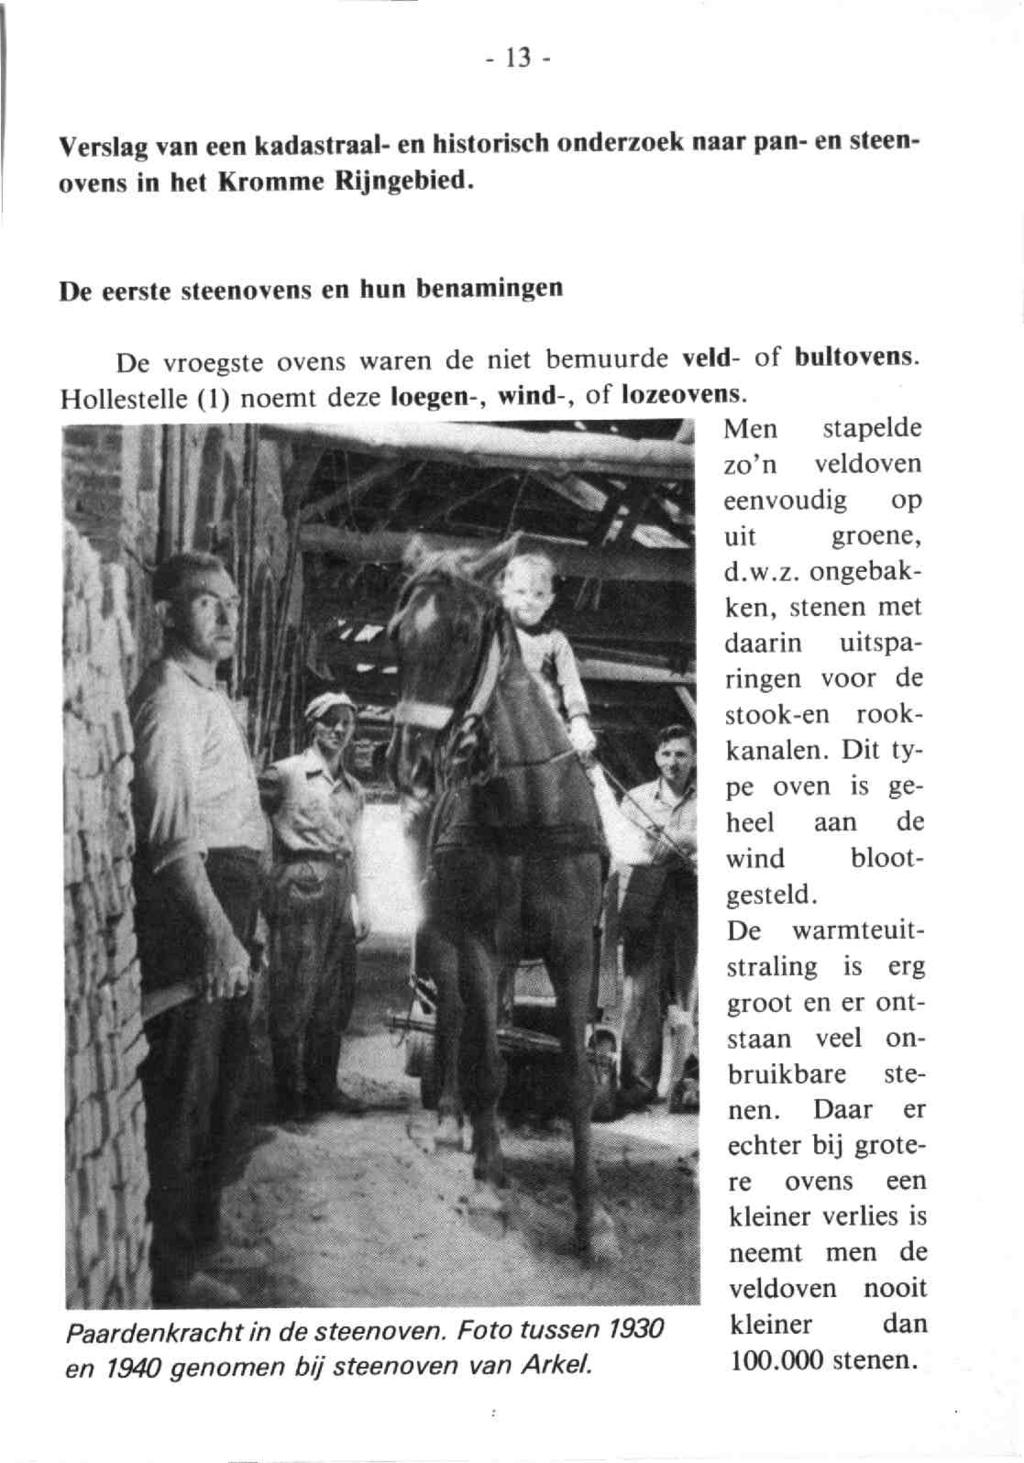 Tussen Rijn en Lek 1981 2. - Dl.15 2-13 Verslag van een kadastraal- en historisch onderzoek naar pan- en steen-ovens in het Kromme Rijngebied.